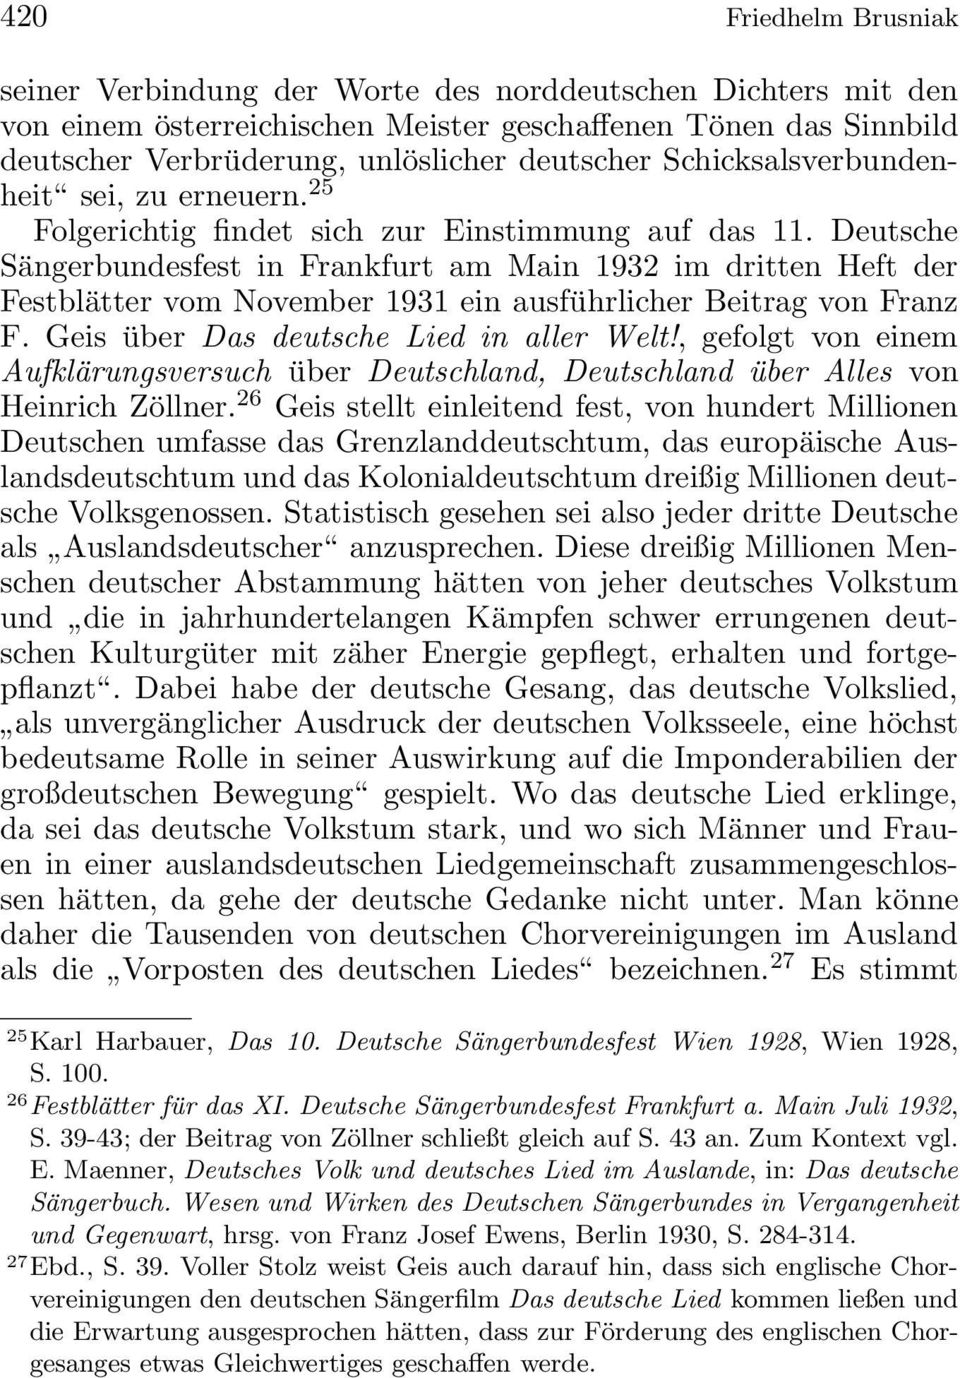 Deutsche Sängerbundesfest in Frankfurt am Main 1932 im dritten Heft der Festblätter vom November 1931 ein ausführlicher Beitrag von Franz F. Geis über Das deutsche Lied in aller Welt!